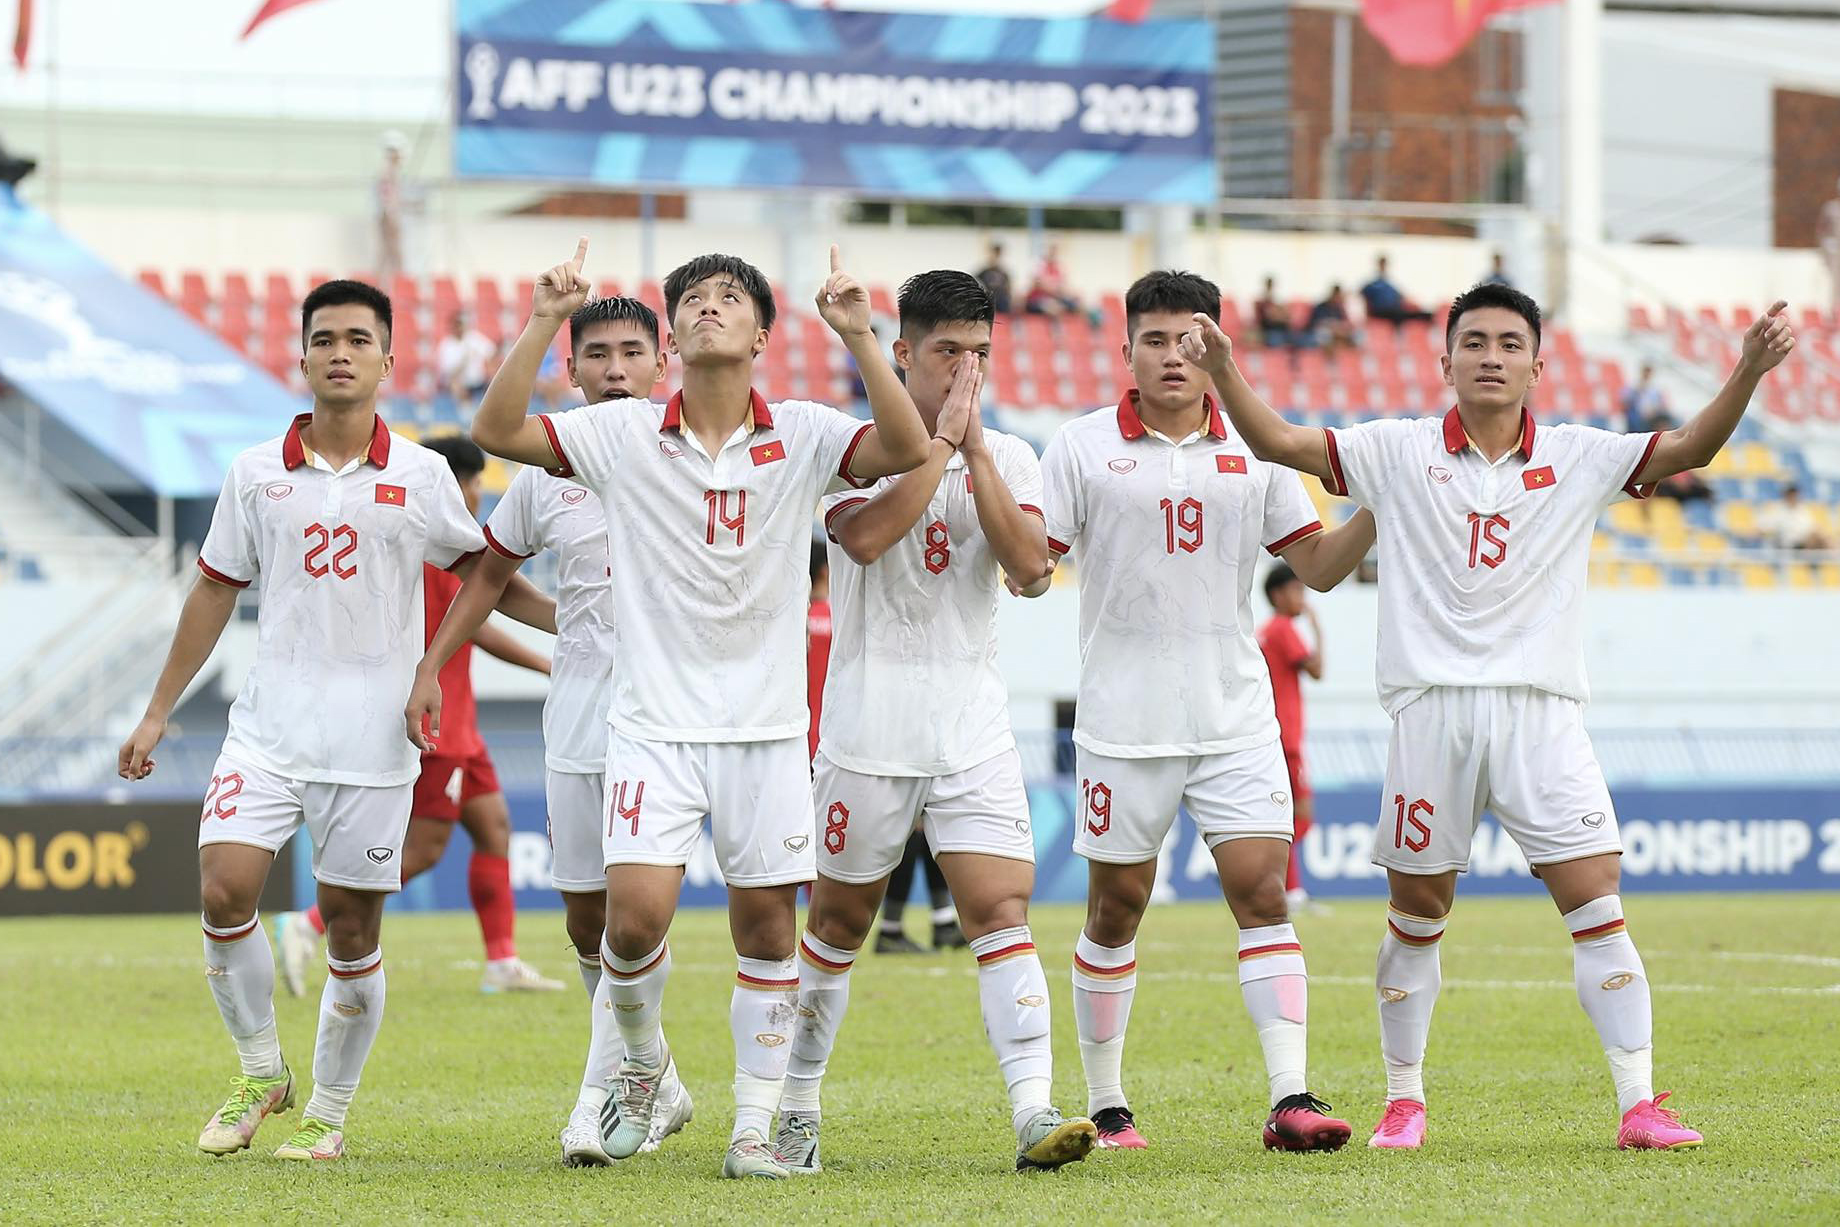 Chiến thắng 4-1 trước U23 Lào giúp U23 Việt Nam sáng cửa giành ngôi nhất bảng C để góp mặt ở bán kết. Trận đấu tiếp theo của thầy trò huấn luyện viên Hoàng Anh Tuấn sẽ là màn so tài với U23 Philippines vào ngày 22.8.